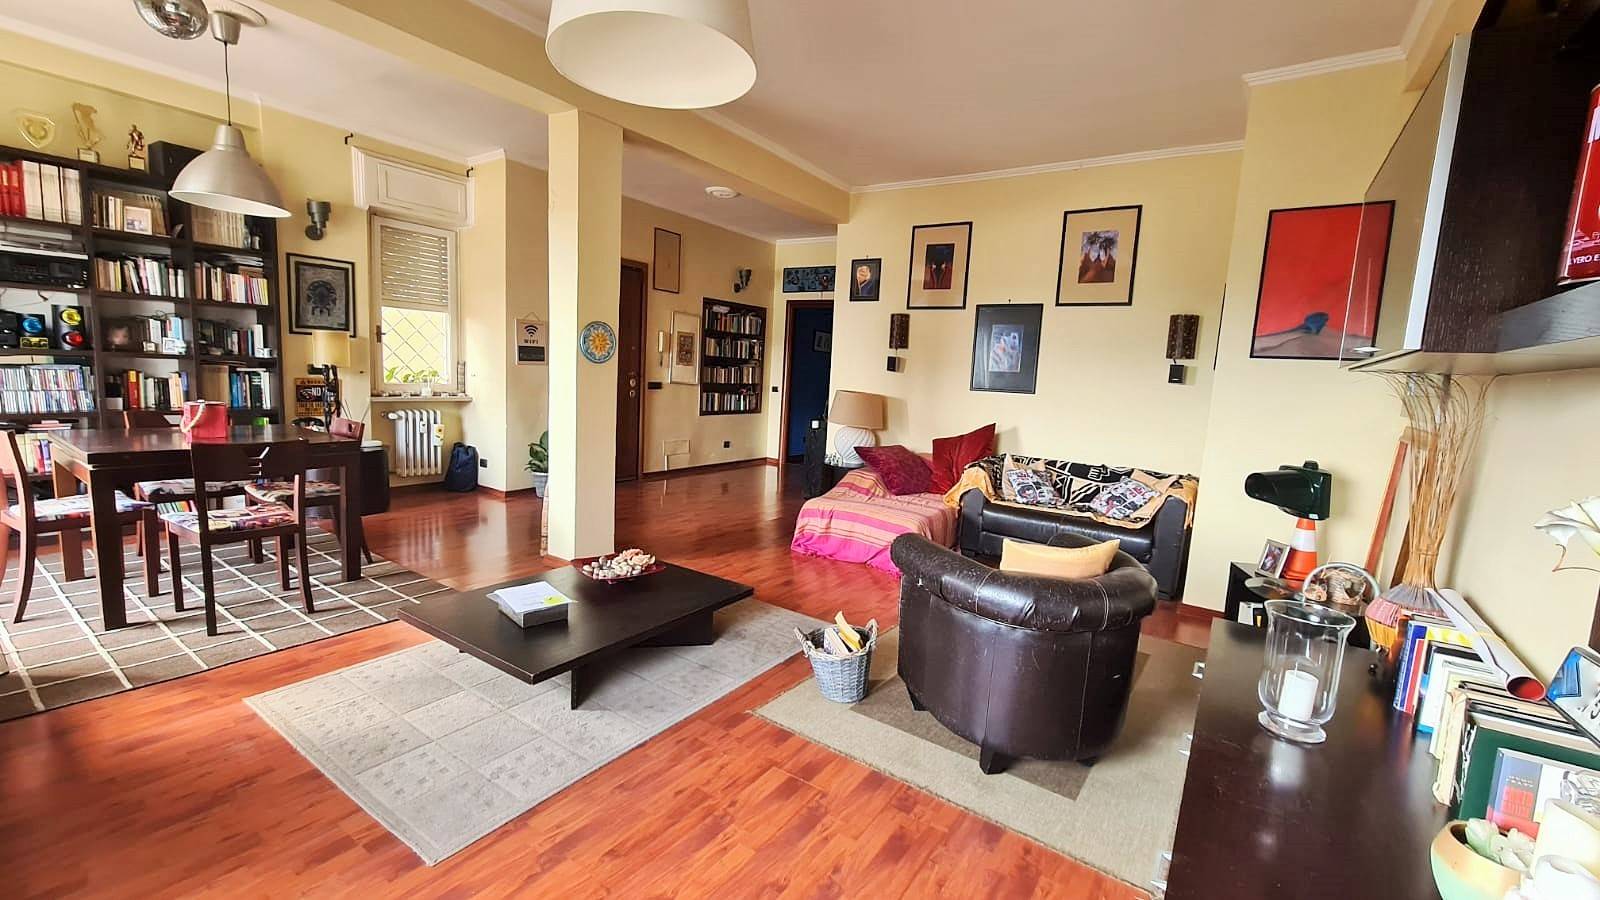 Appartamento in vendita a Roma, 6 locali, zona Zona: 42 . Cassia - Olgiata, prezzo € 320.000 | CambioCasa.it